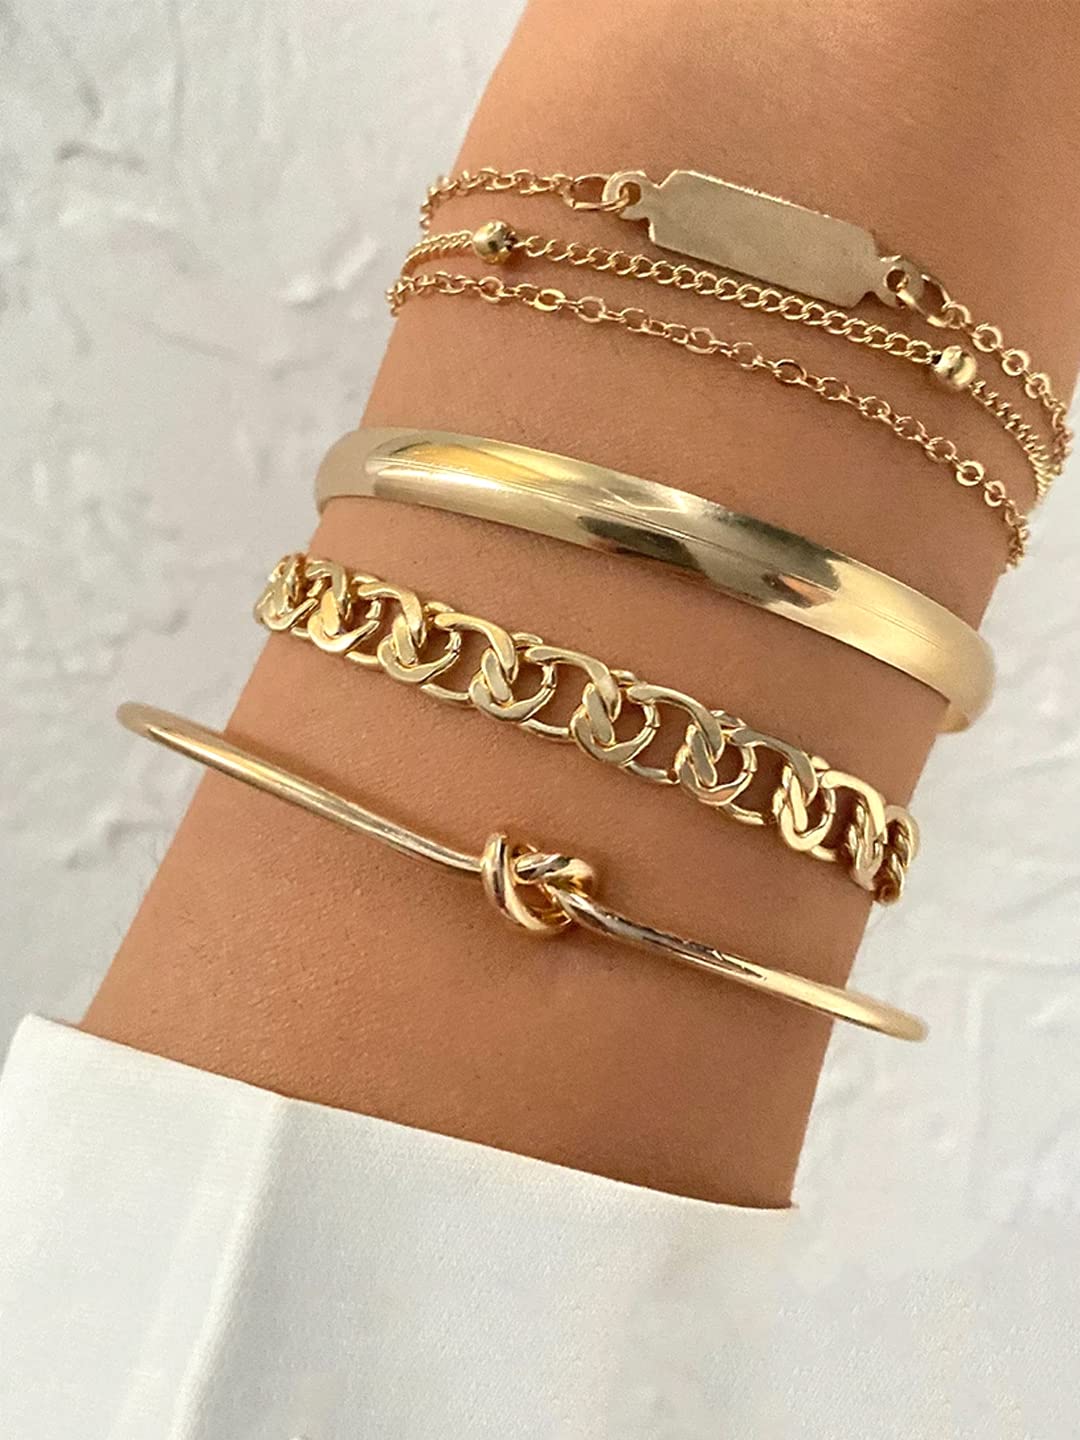 Fashion Gold Tone Cuff Bangle Bracelet Set - Etsy